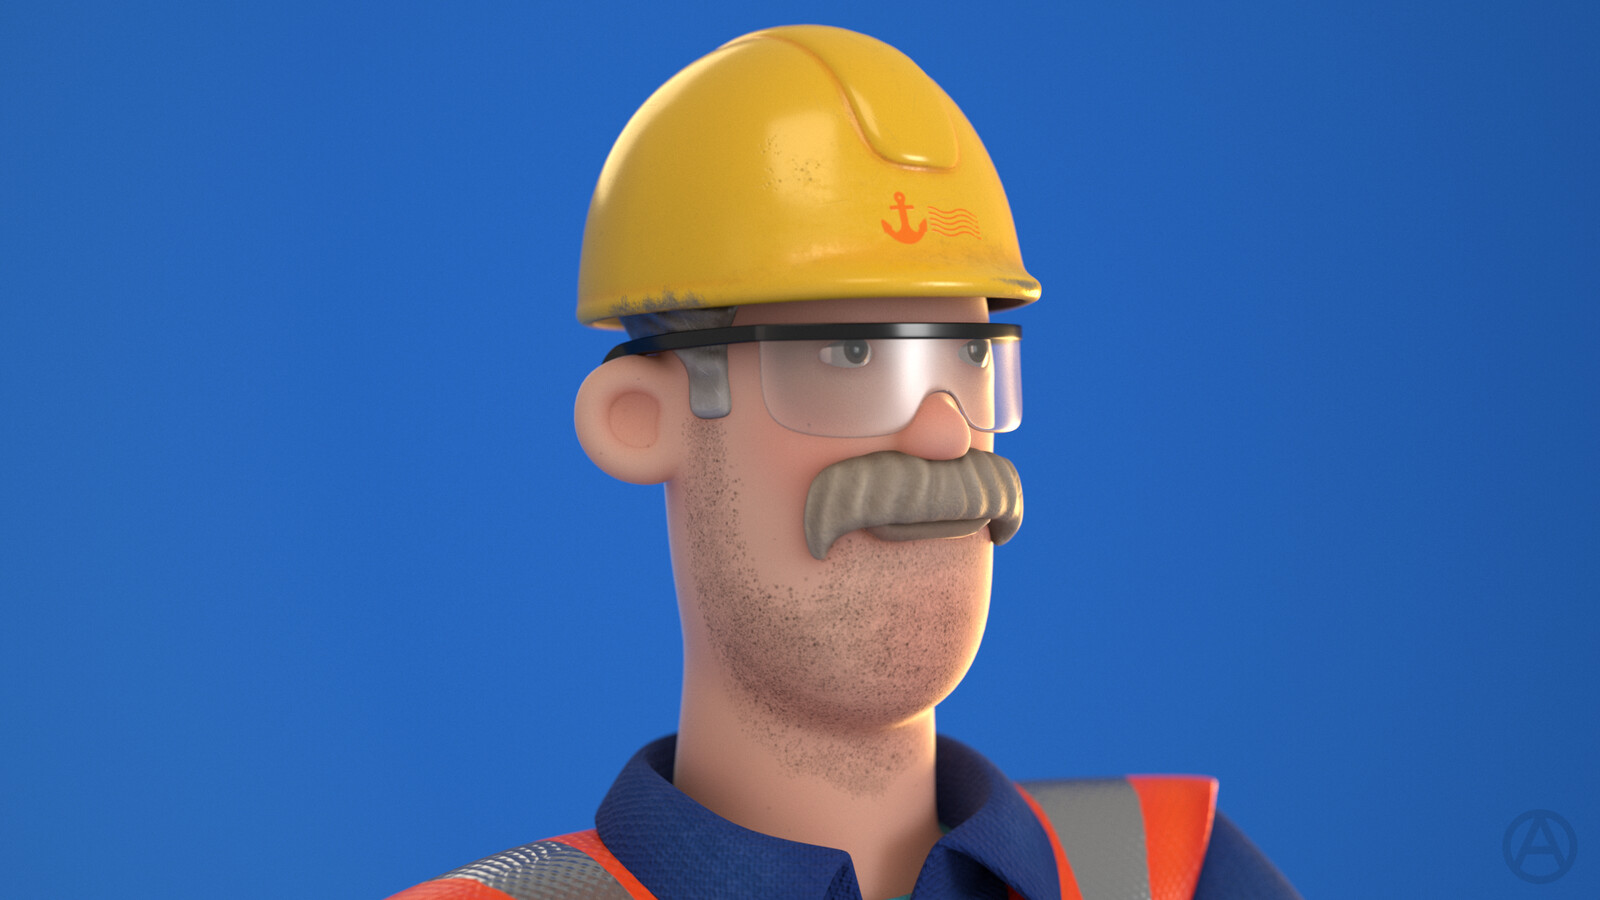 Port Worker Man, face